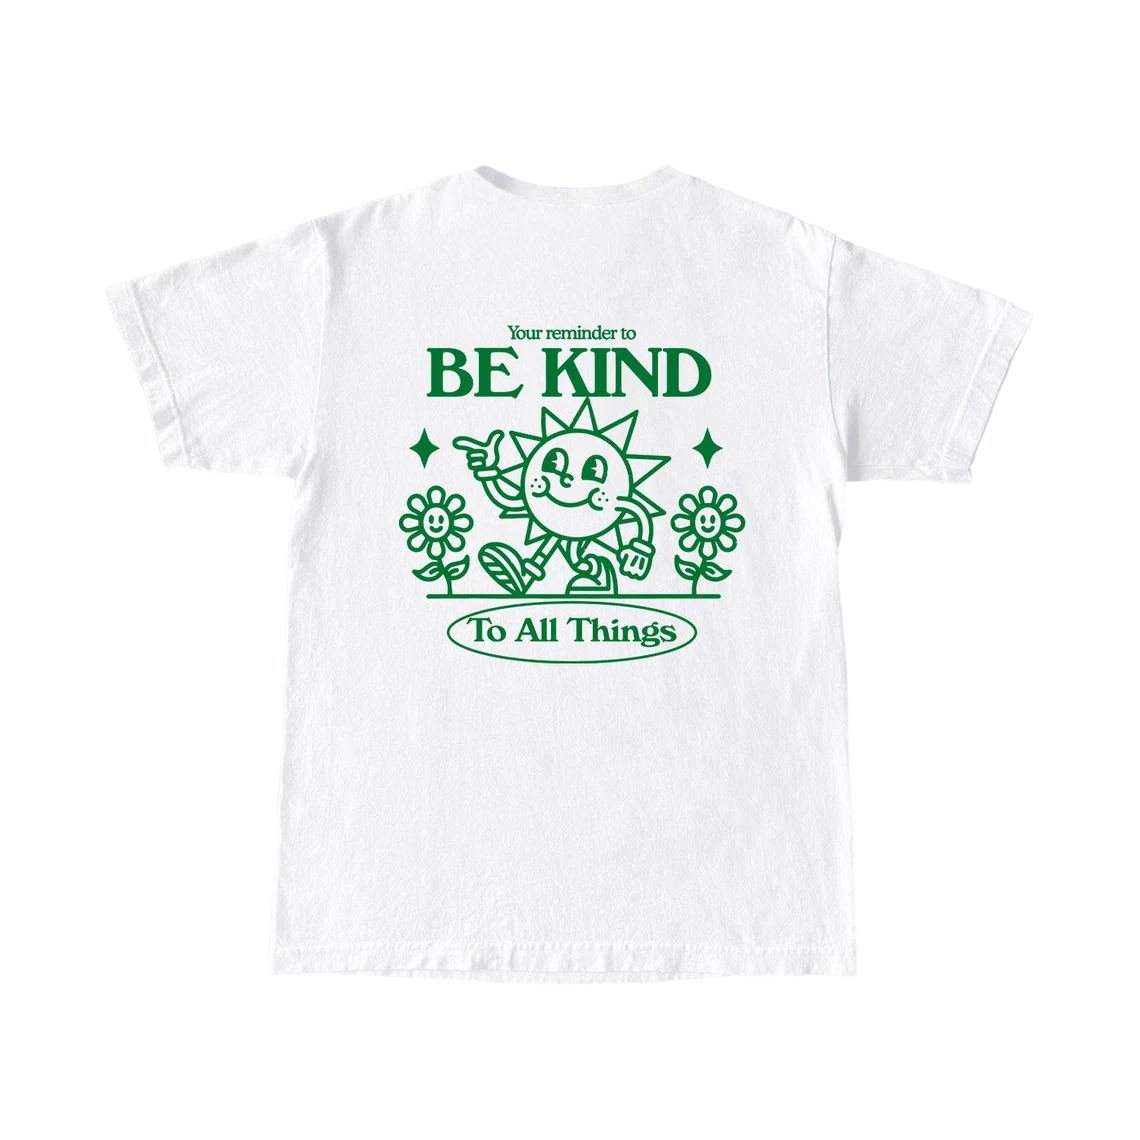 Kindness Slogan T-shirt - T-shirts